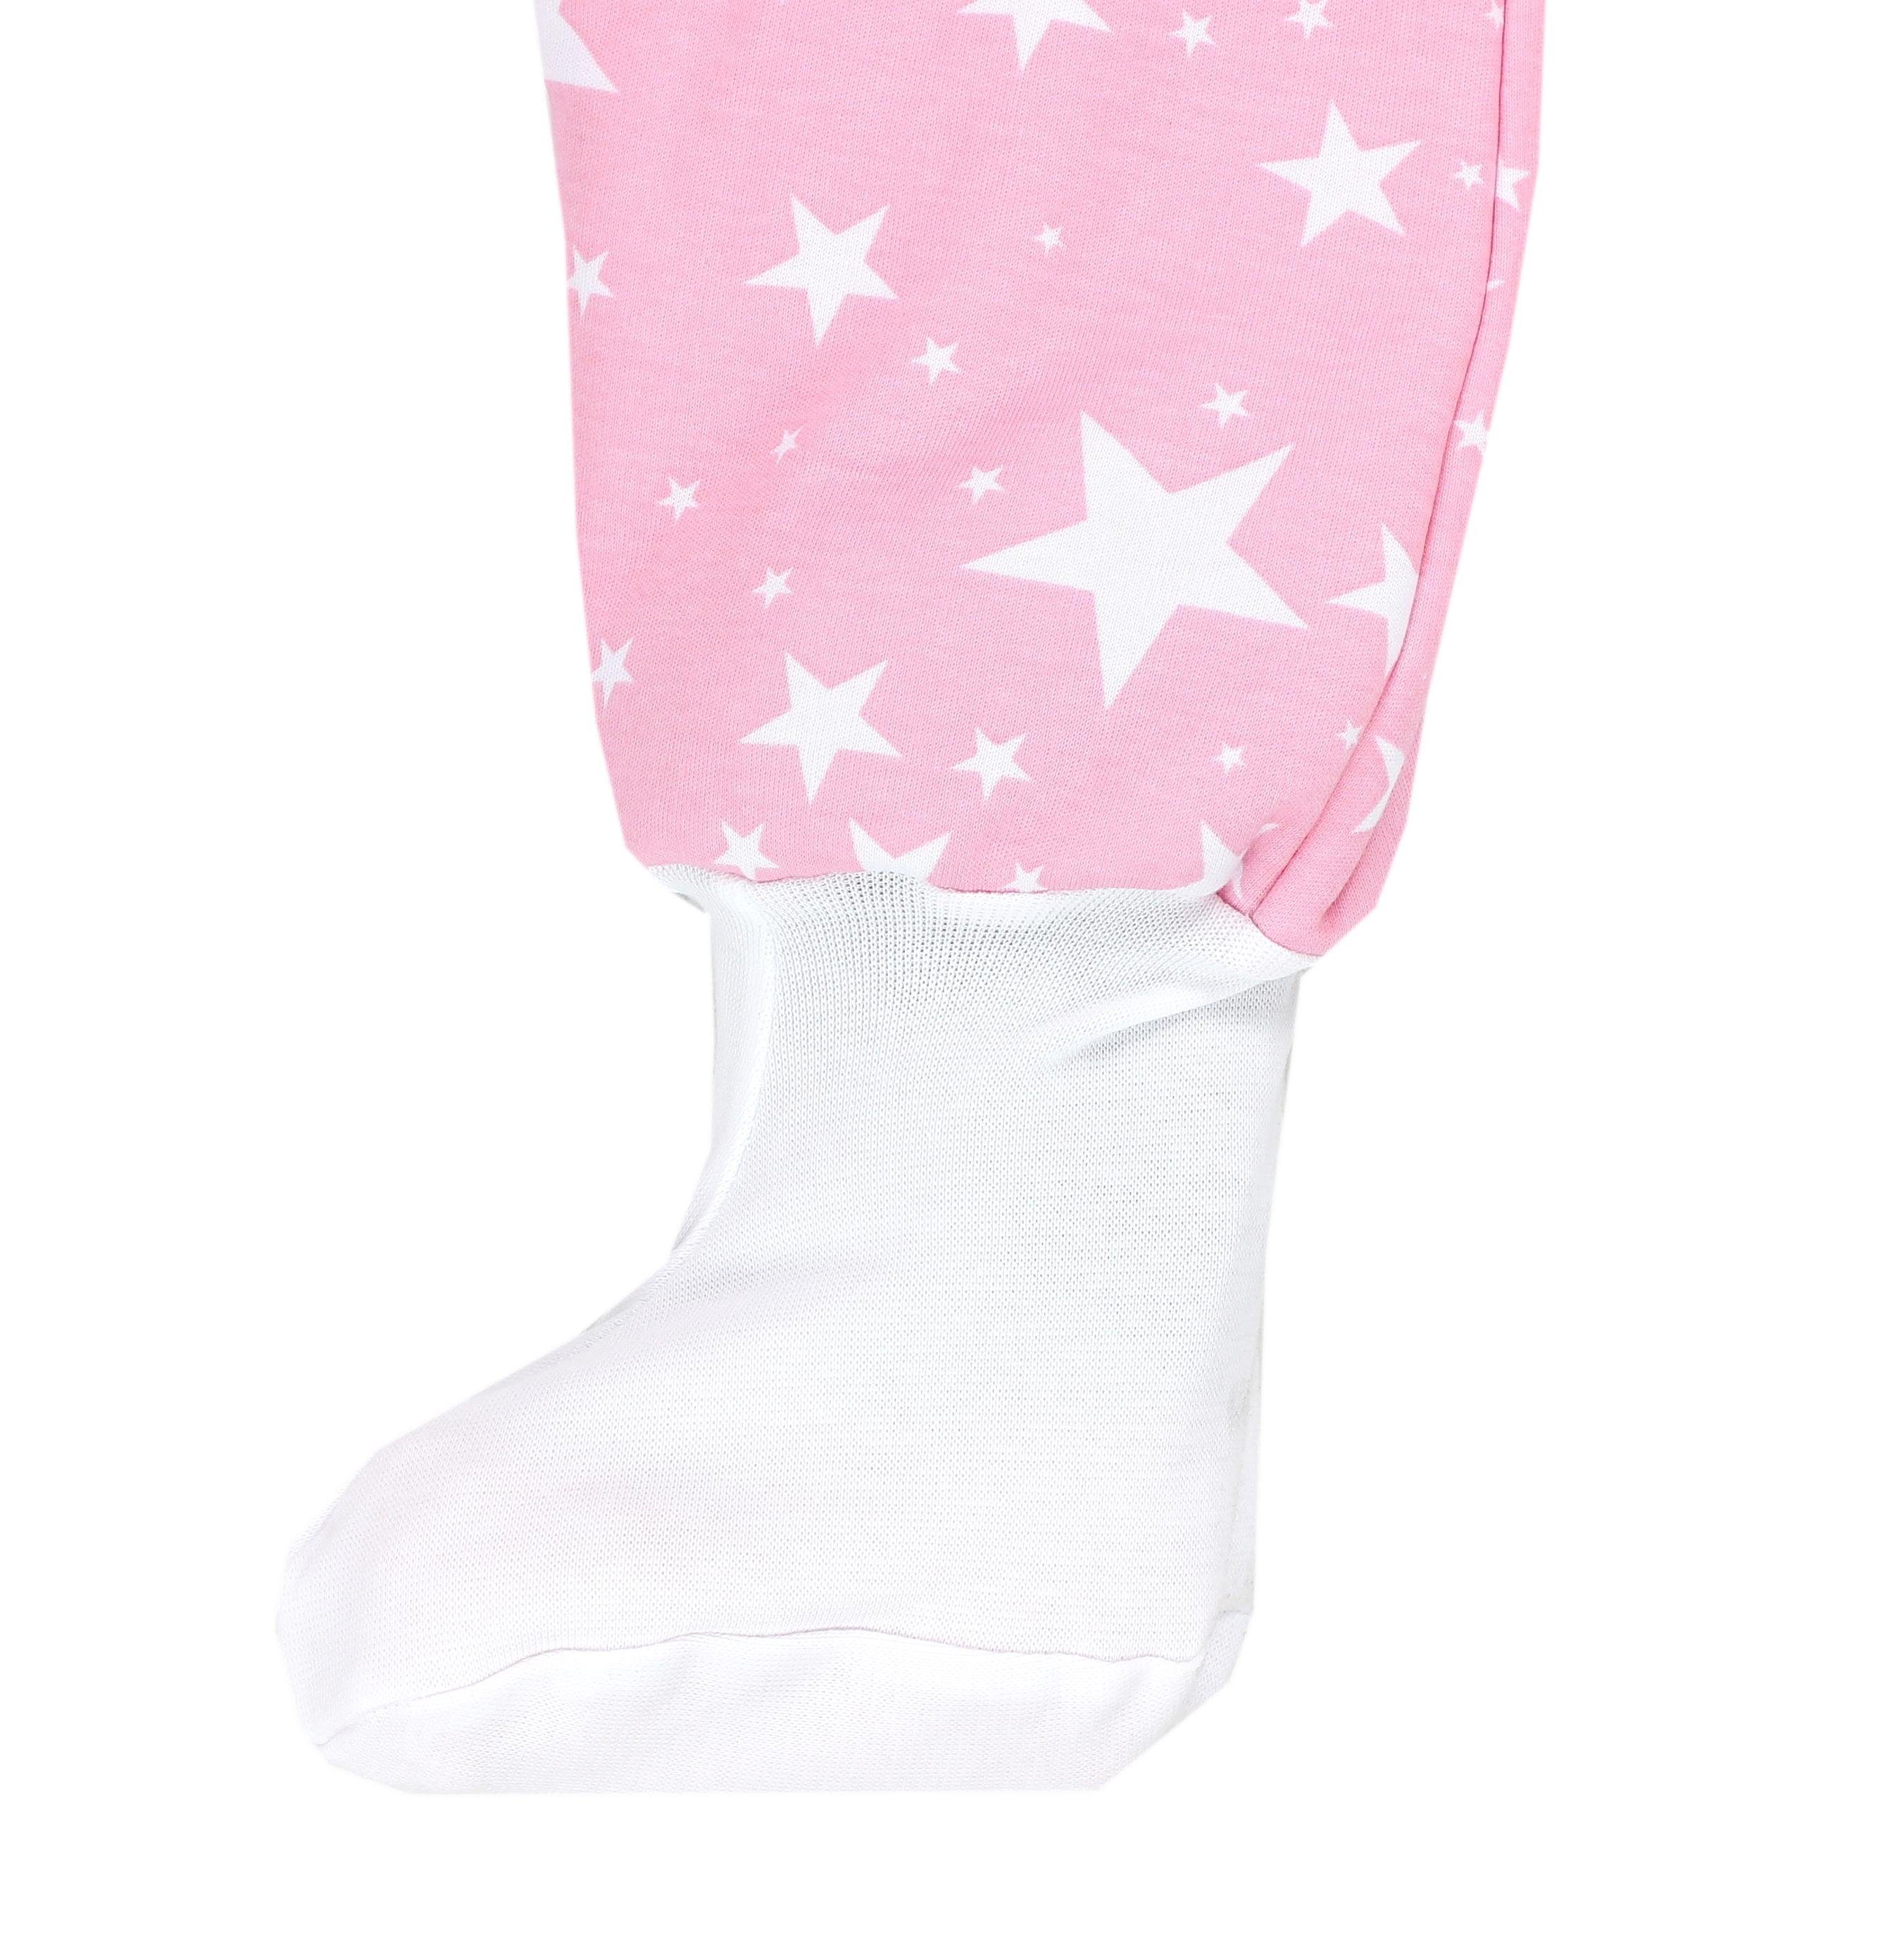 / Winterschlafsack Rosa OEKO-TEX Füßen Weiße Sterne mit 2.5 zertifiziert, Babyschlafsack Beinen TOG und TupTam